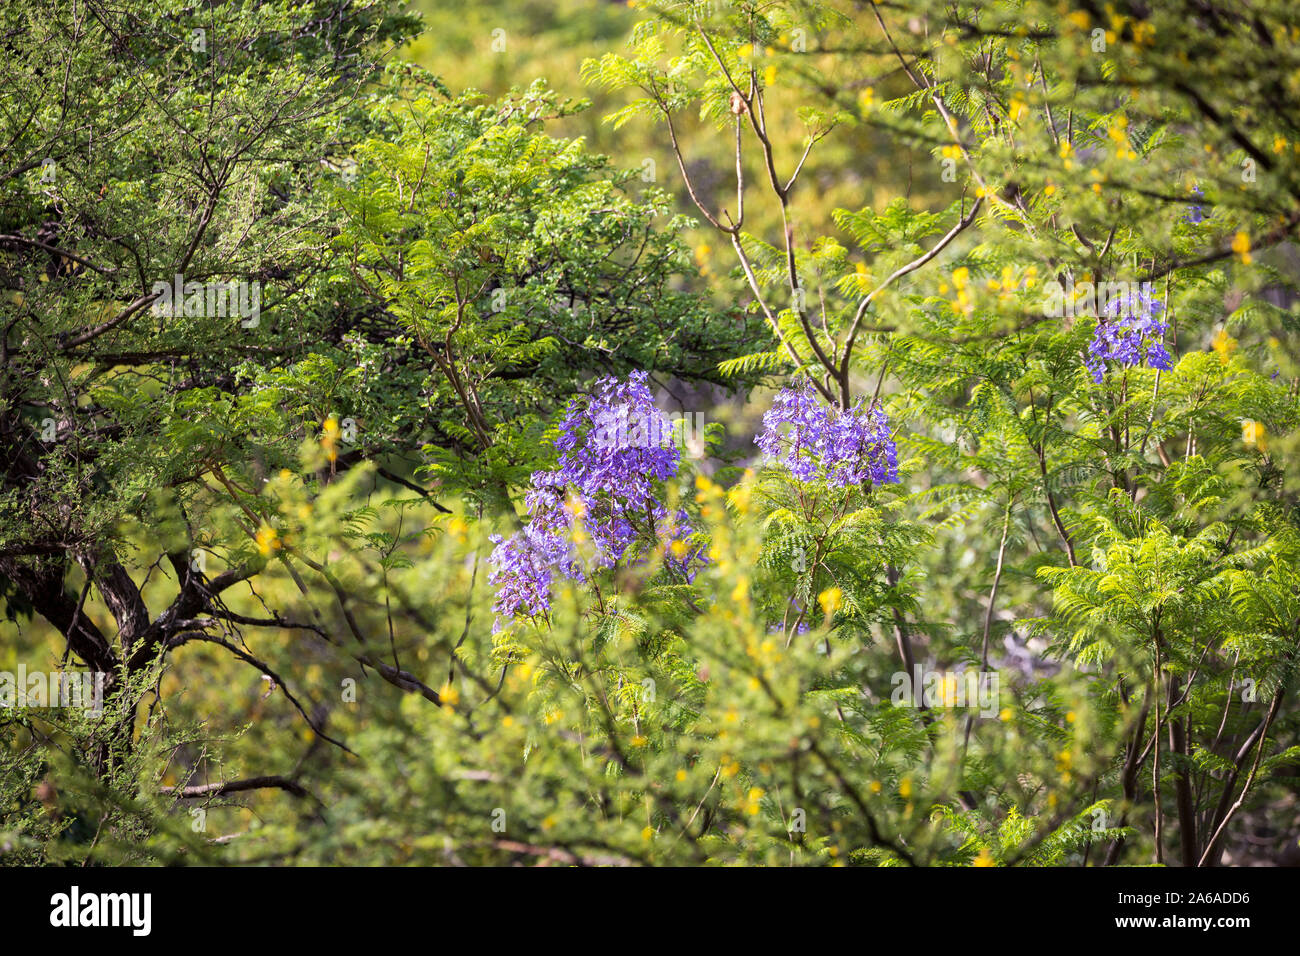 Fond vert avec des arbres, plantes et fleurs violettes Banque D'Images